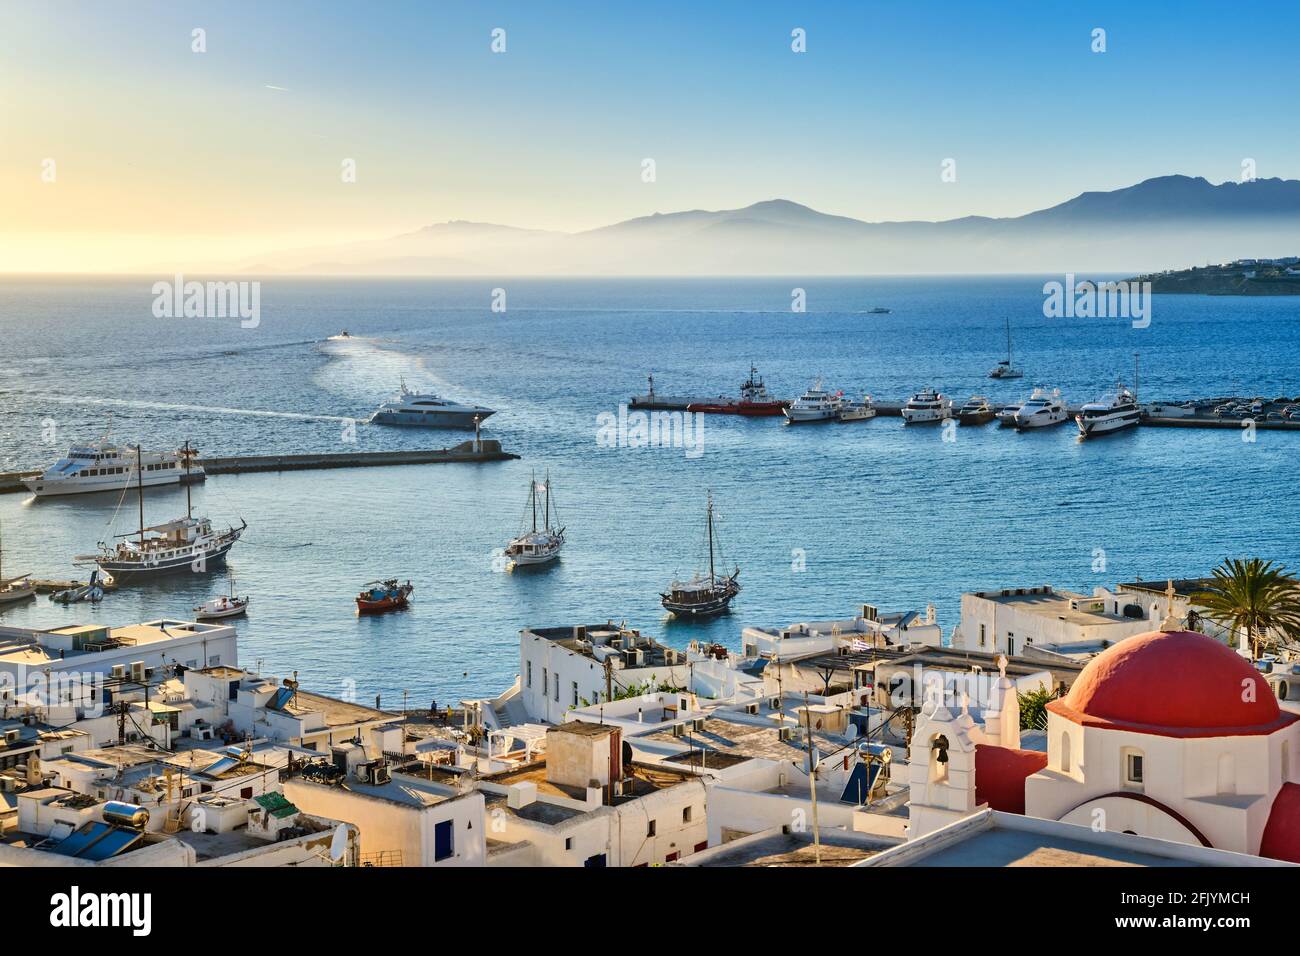 Belle vue sur Chora, Mykonos, Grèce au coucher du soleil. Port, baie, bateaux, yachts amarrés par la jetée. Célèbres maisons blanchies à la chaux, église blanche avec dôme rouge Banque D'Images